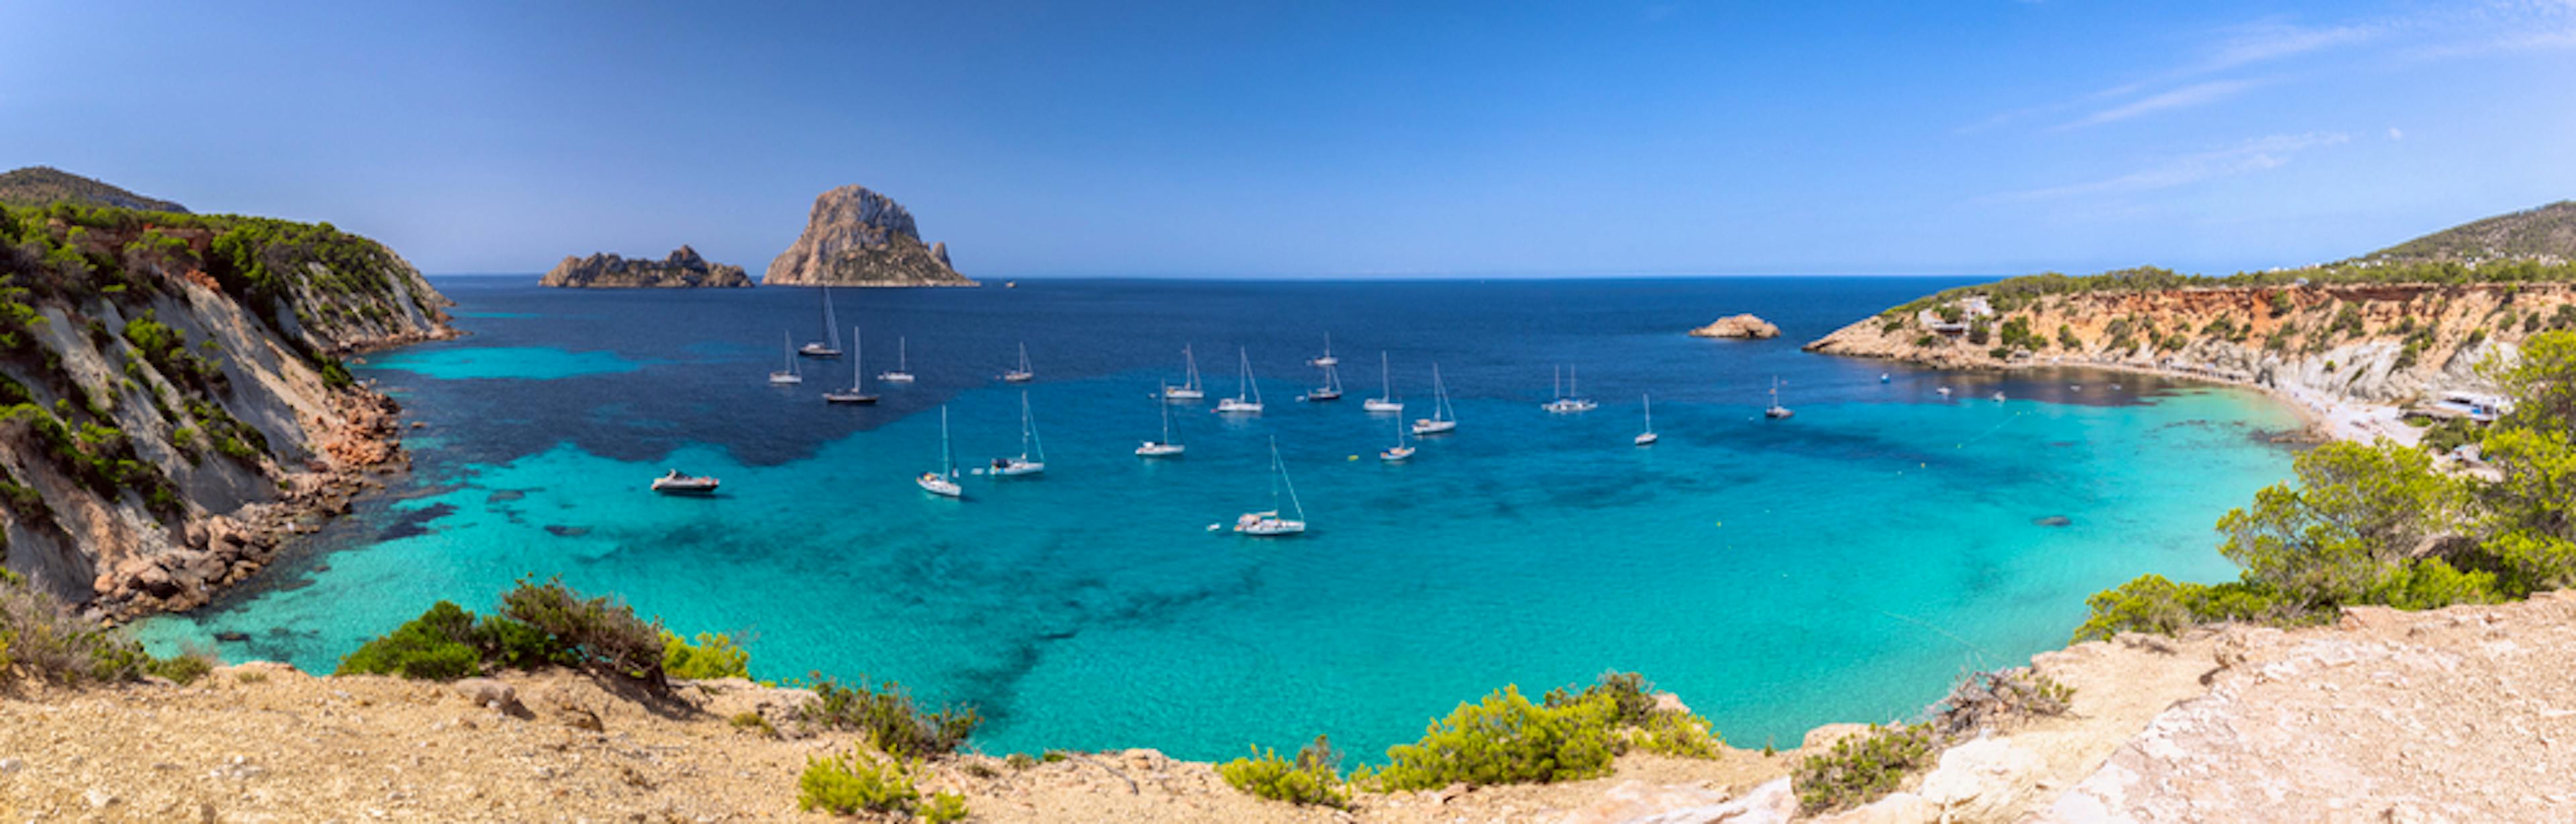 Le migliori spiagge di Ibiza da visitare in barca